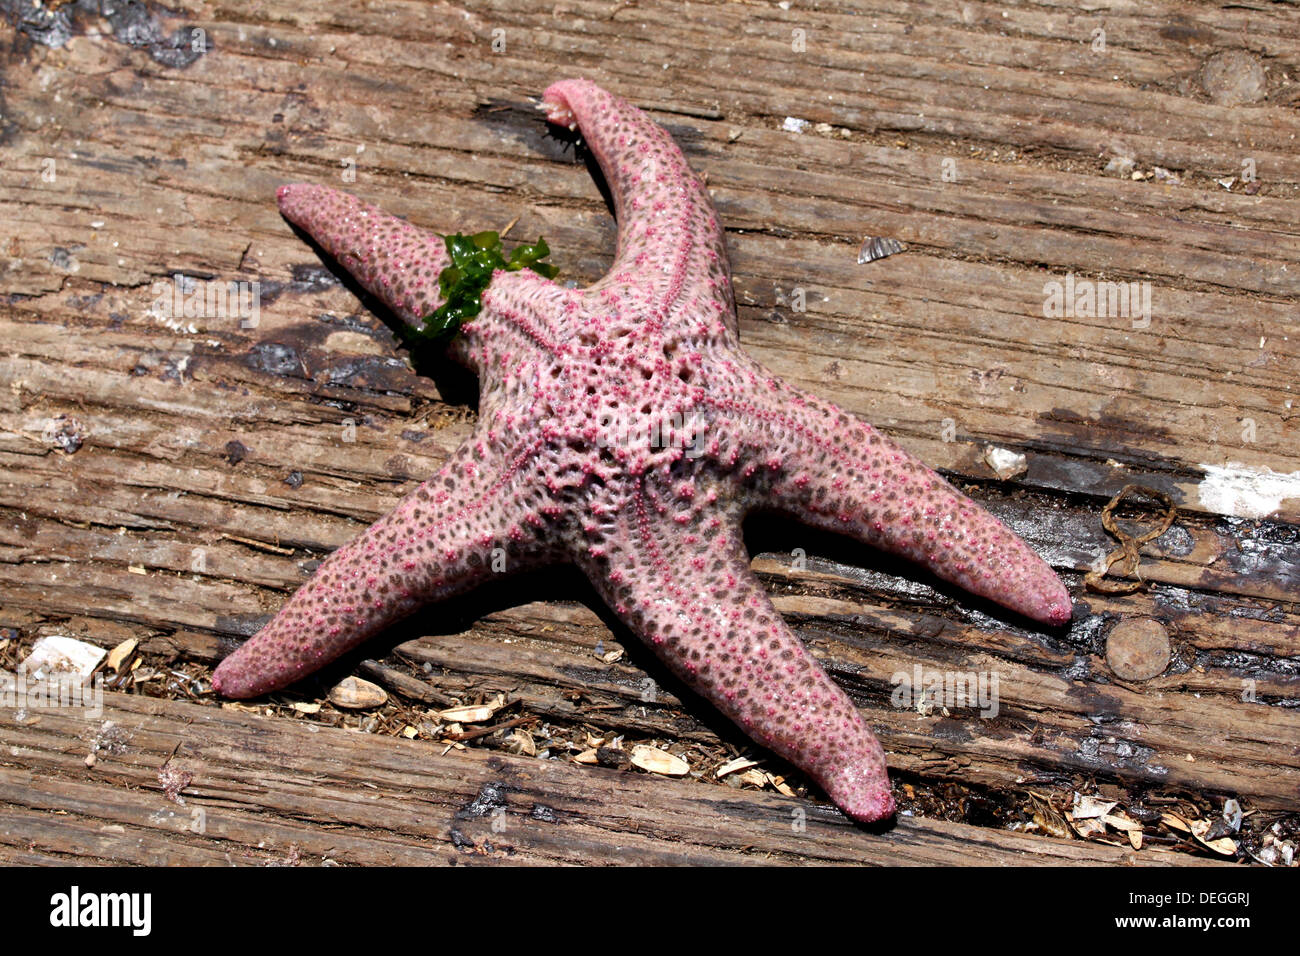 starfish Stock Photo